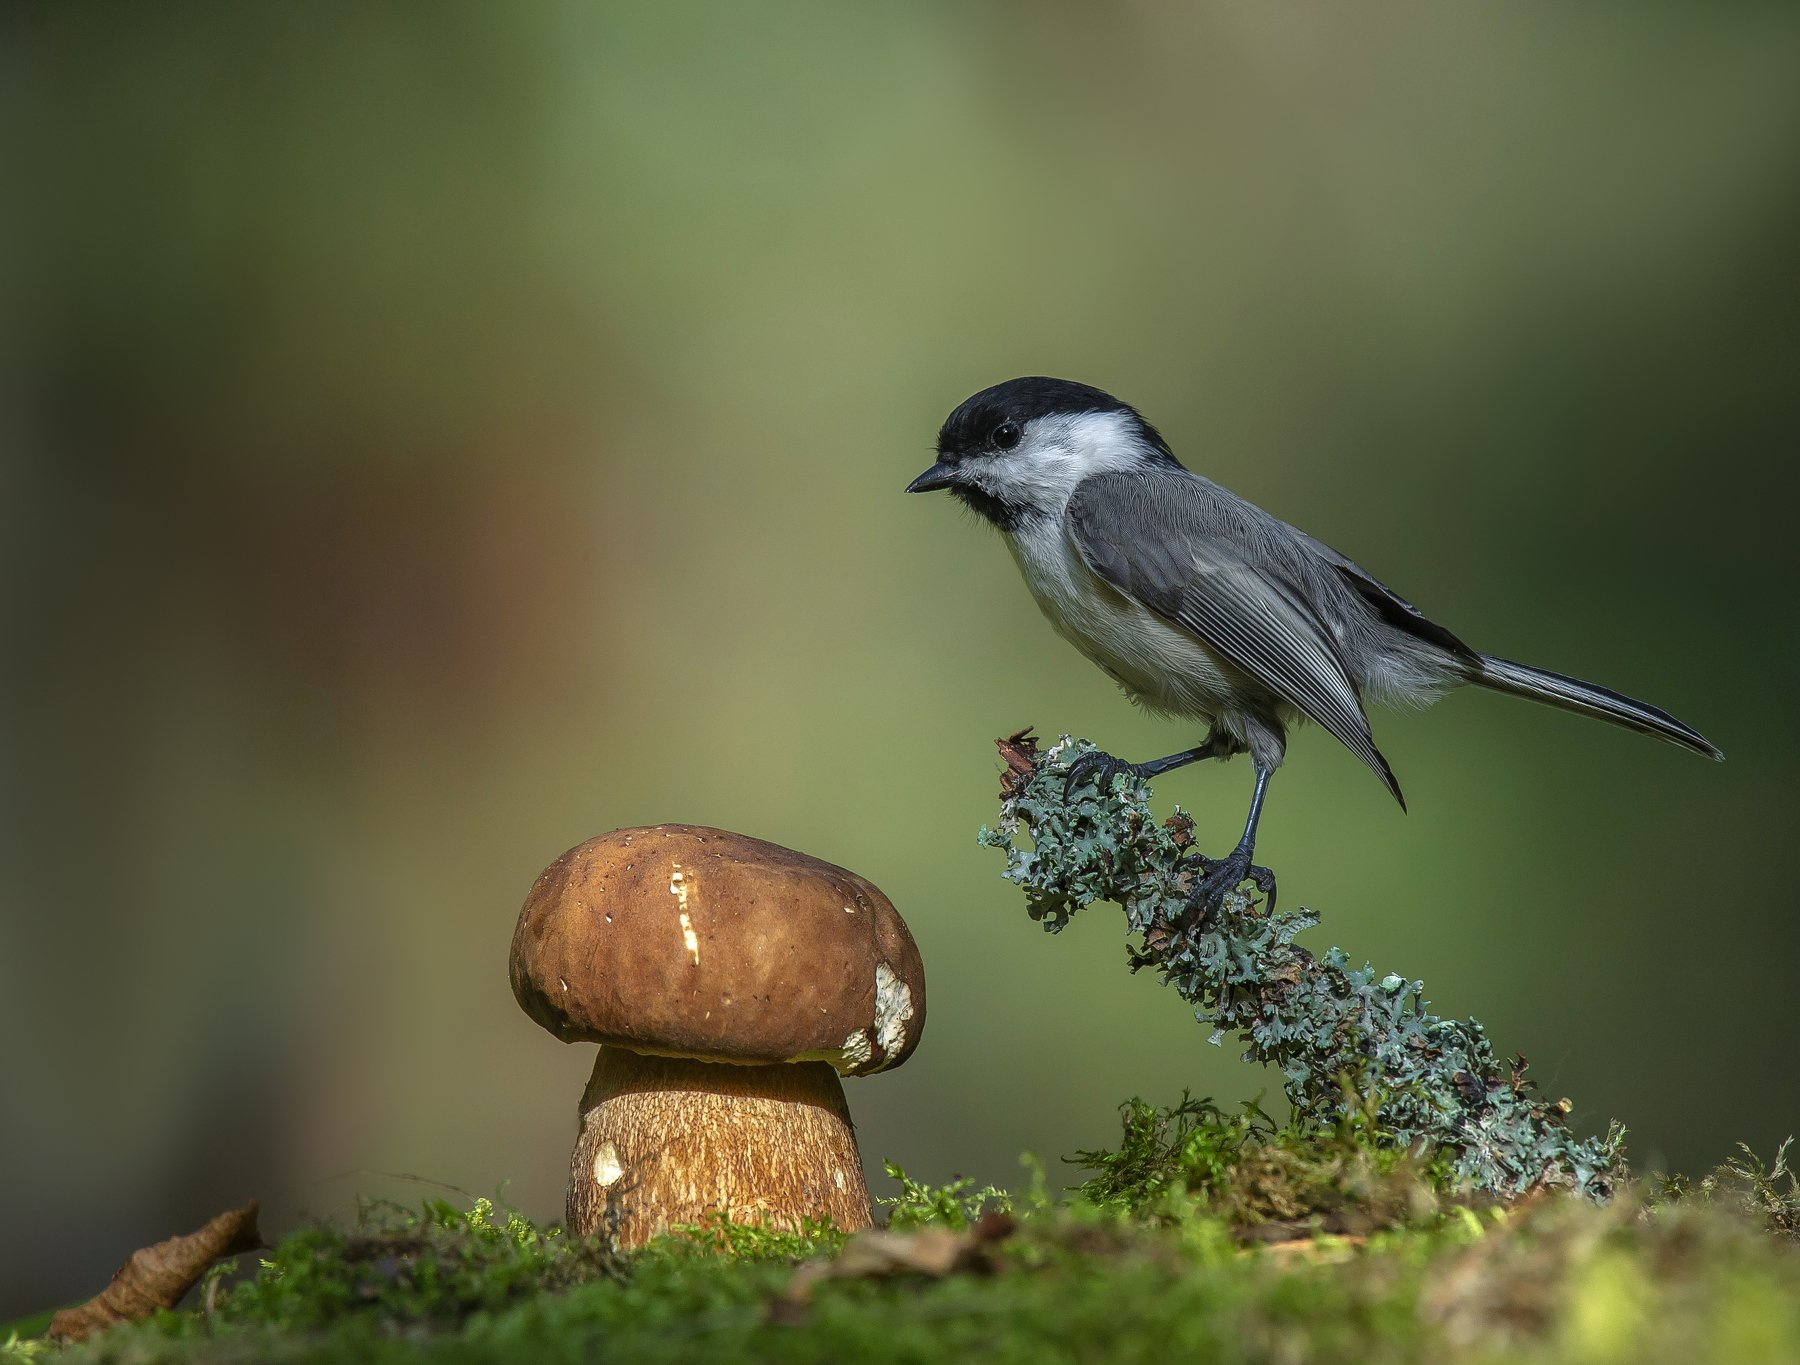 птицы,природа, лето,грибы, Андрей Киселёв